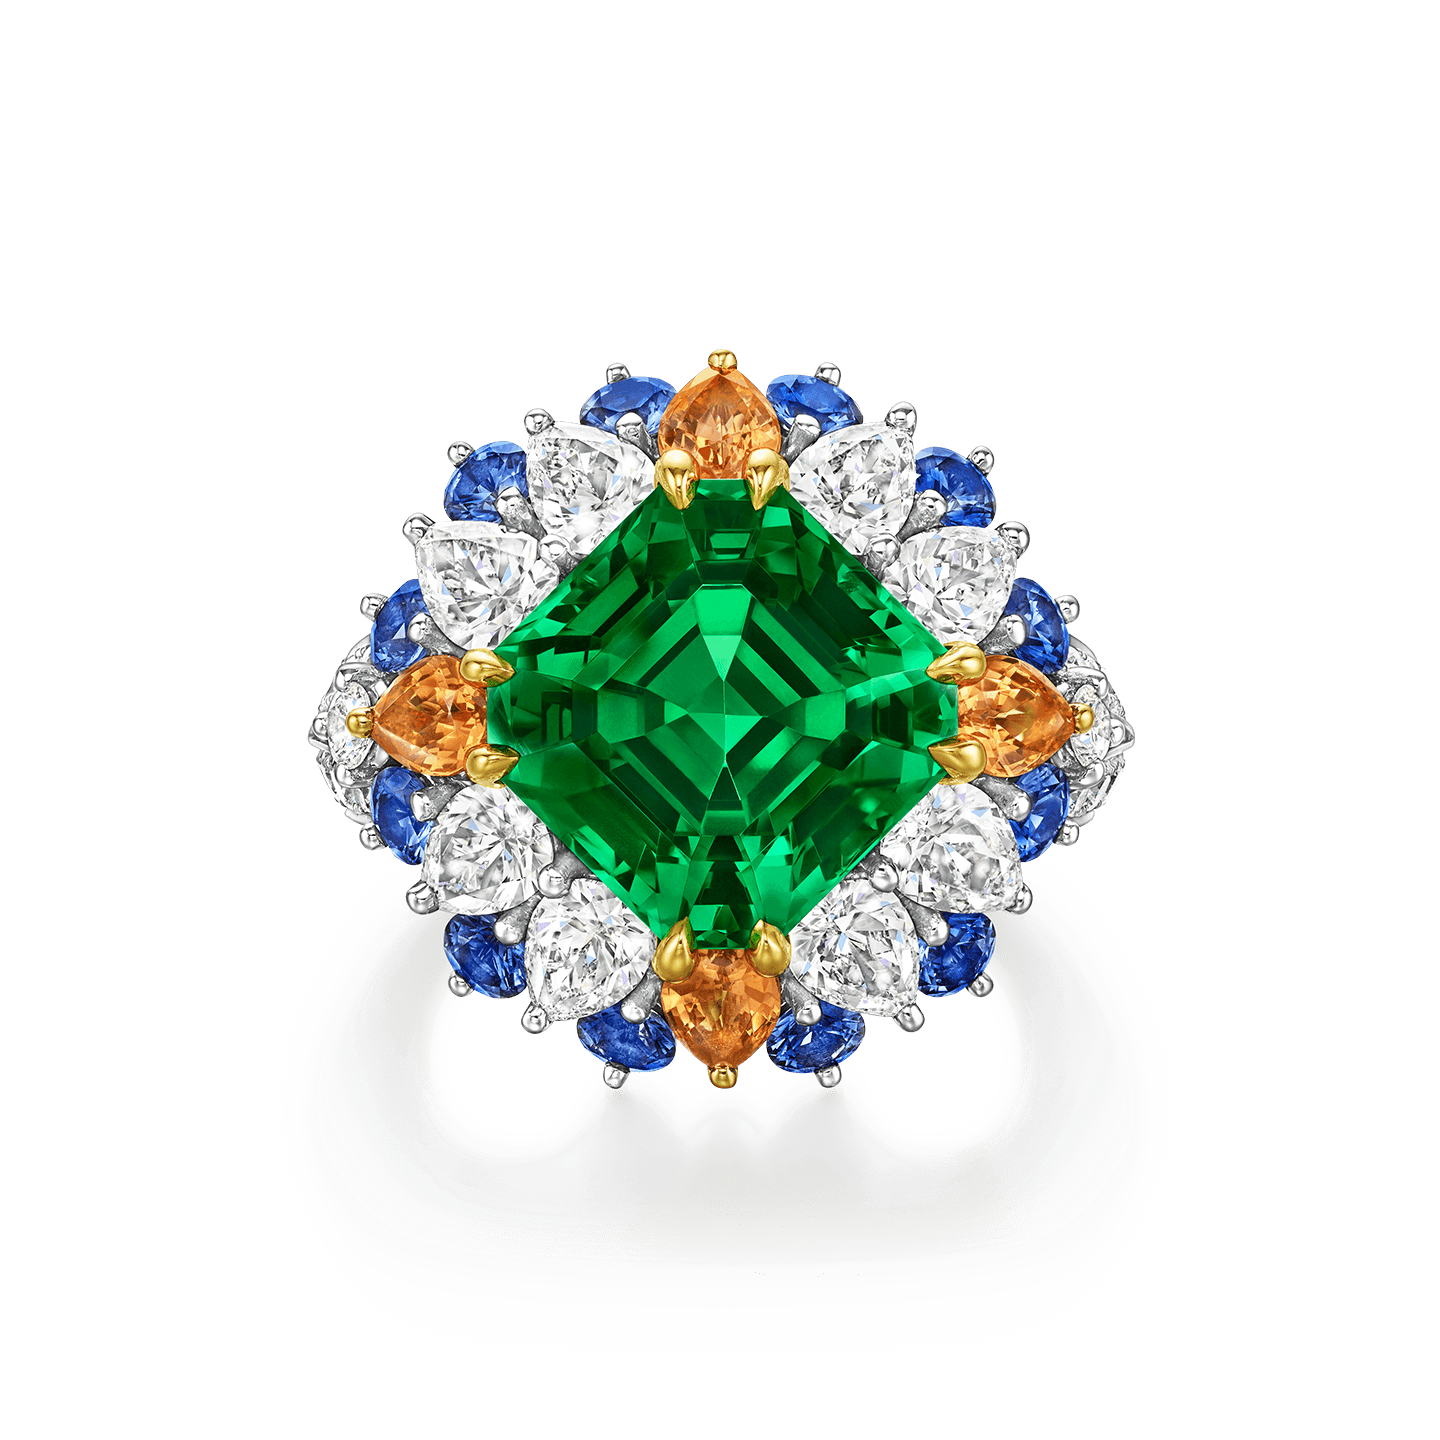 Winston Candy沙弗莱石戒指，搭配蓝宝石、锰铝榴石和钻石